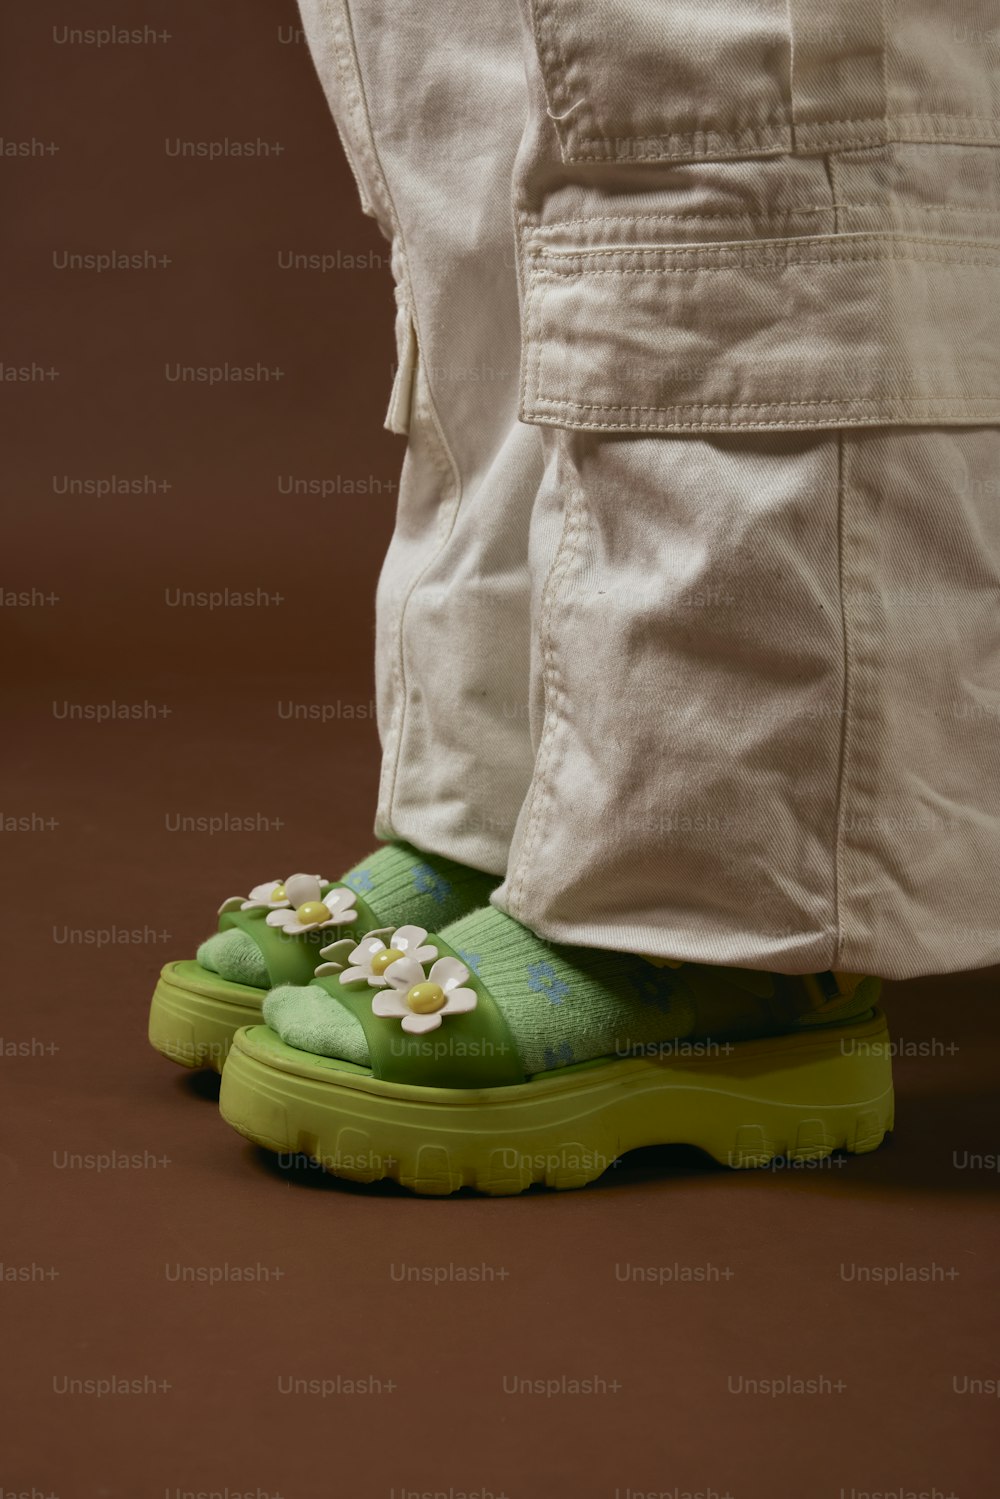 un paio di scarpe verdi con fiori su di loro